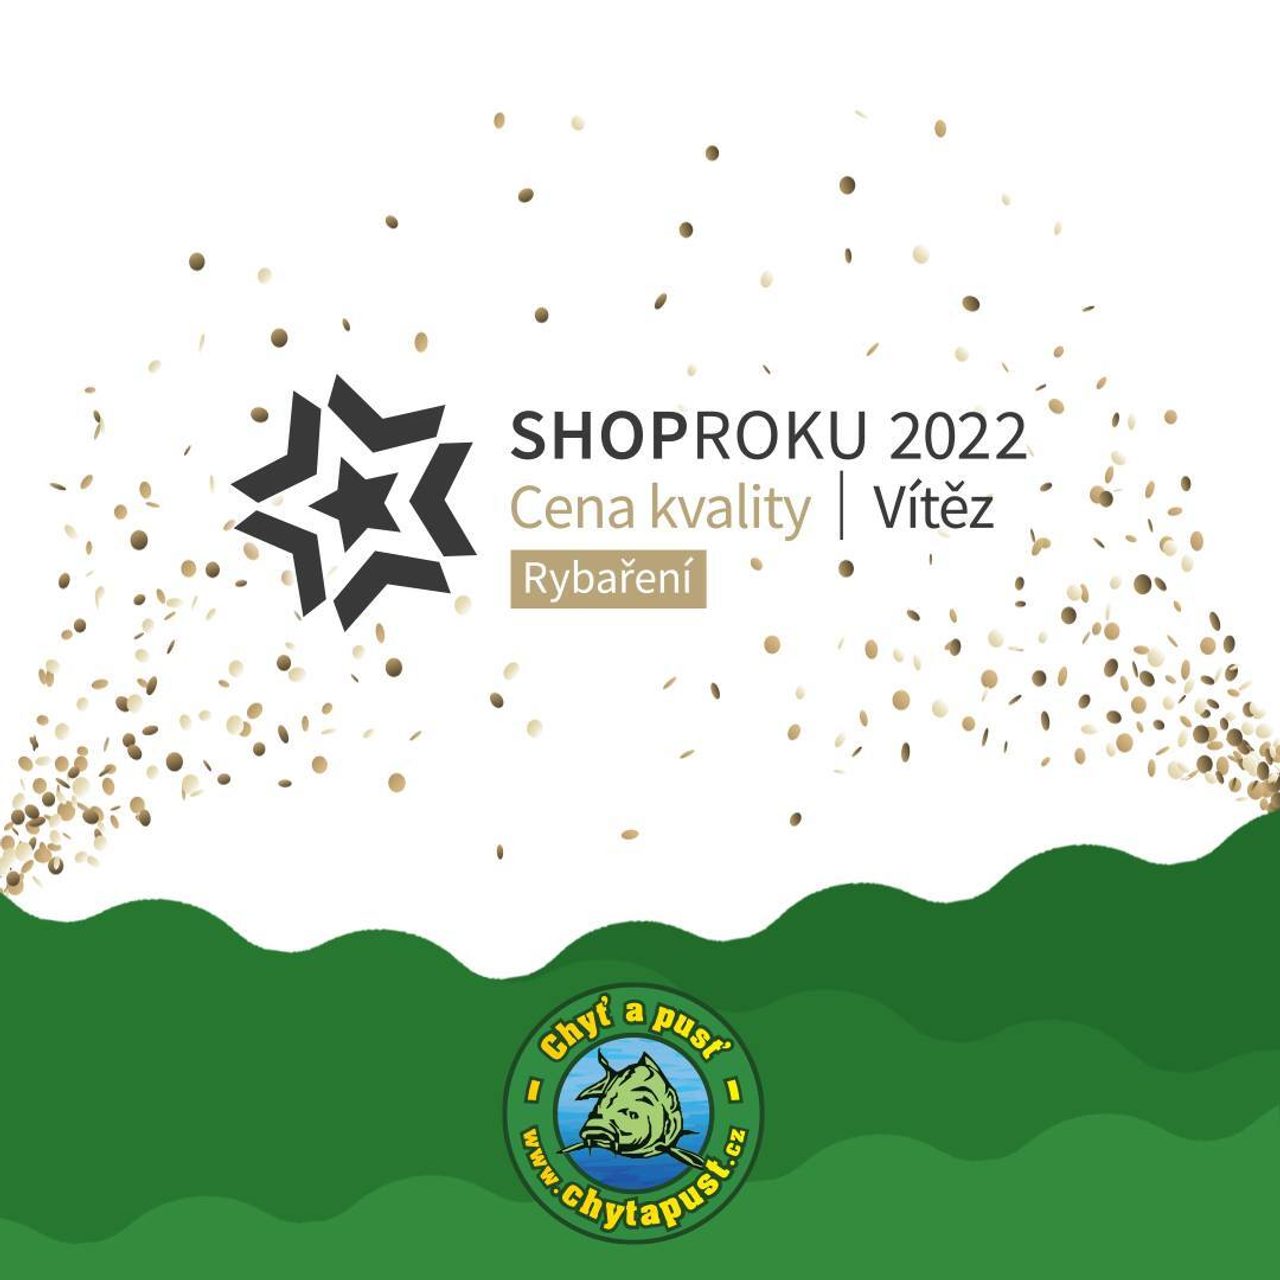 Děkujeme za motivaci a vítězství v soutěži ShopRoku 2022